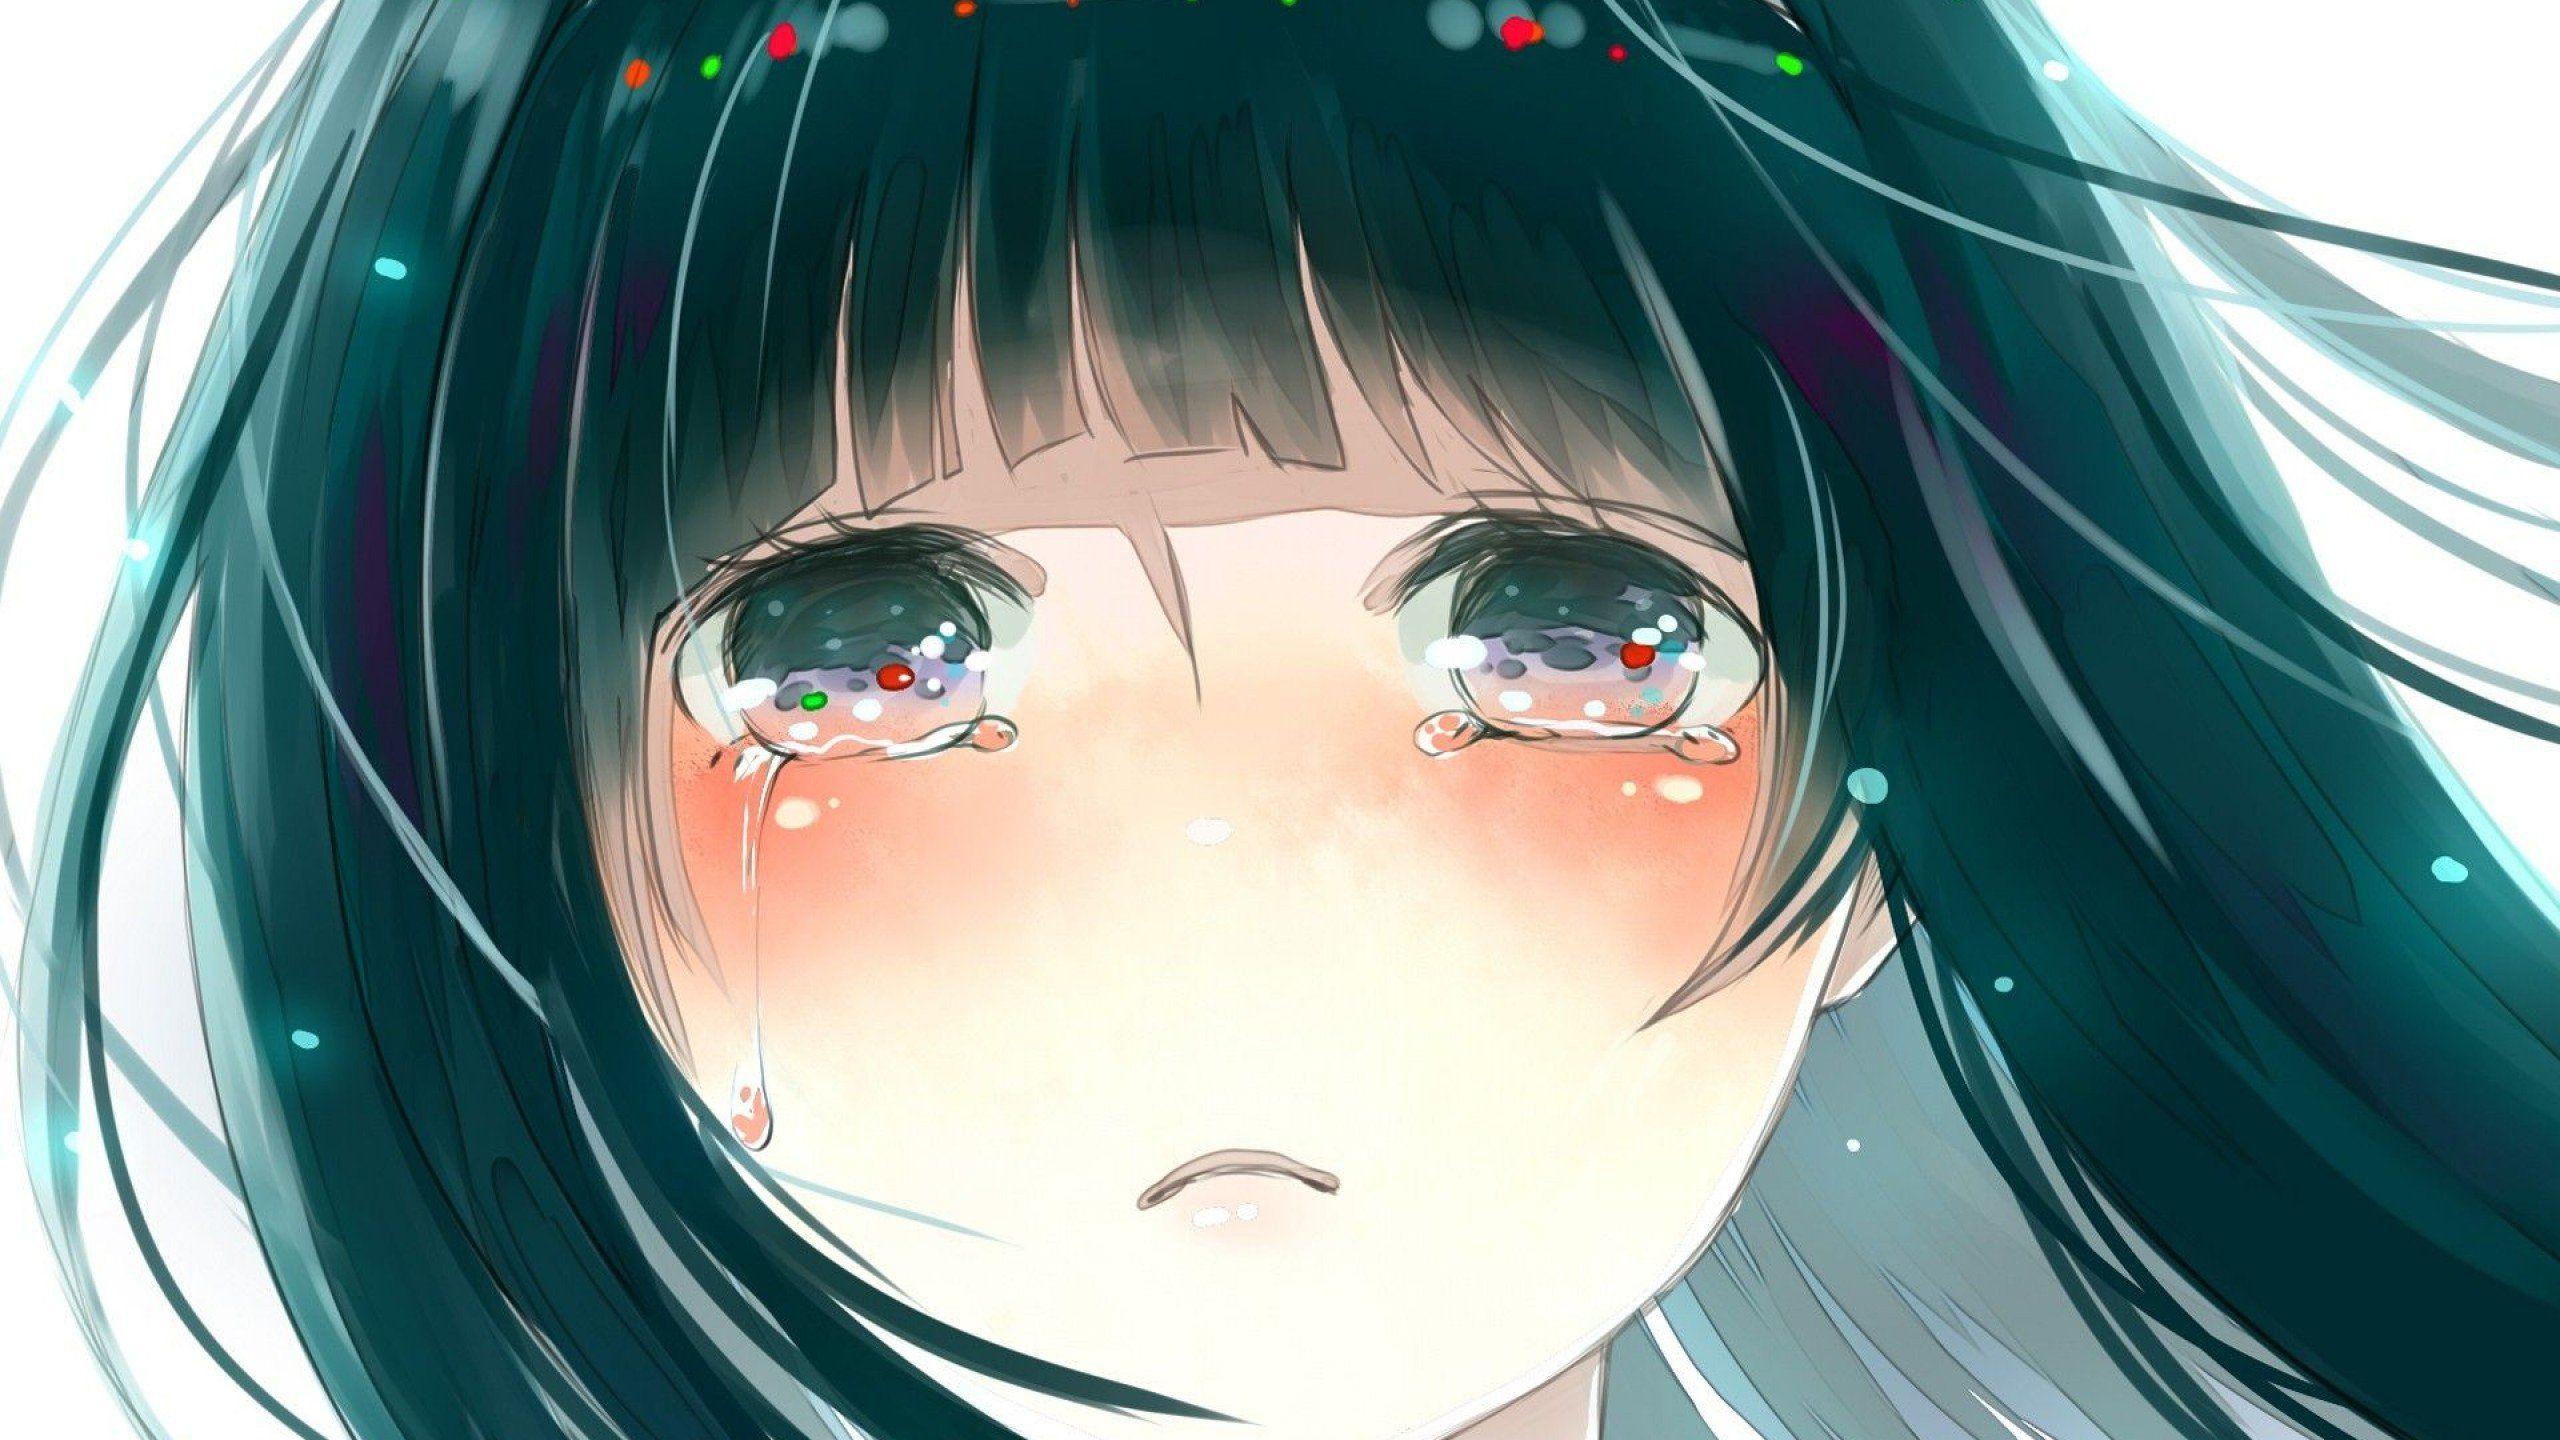 Crying Anime Girl Wallpapers - Top Những Hình Ảnh Đẹp